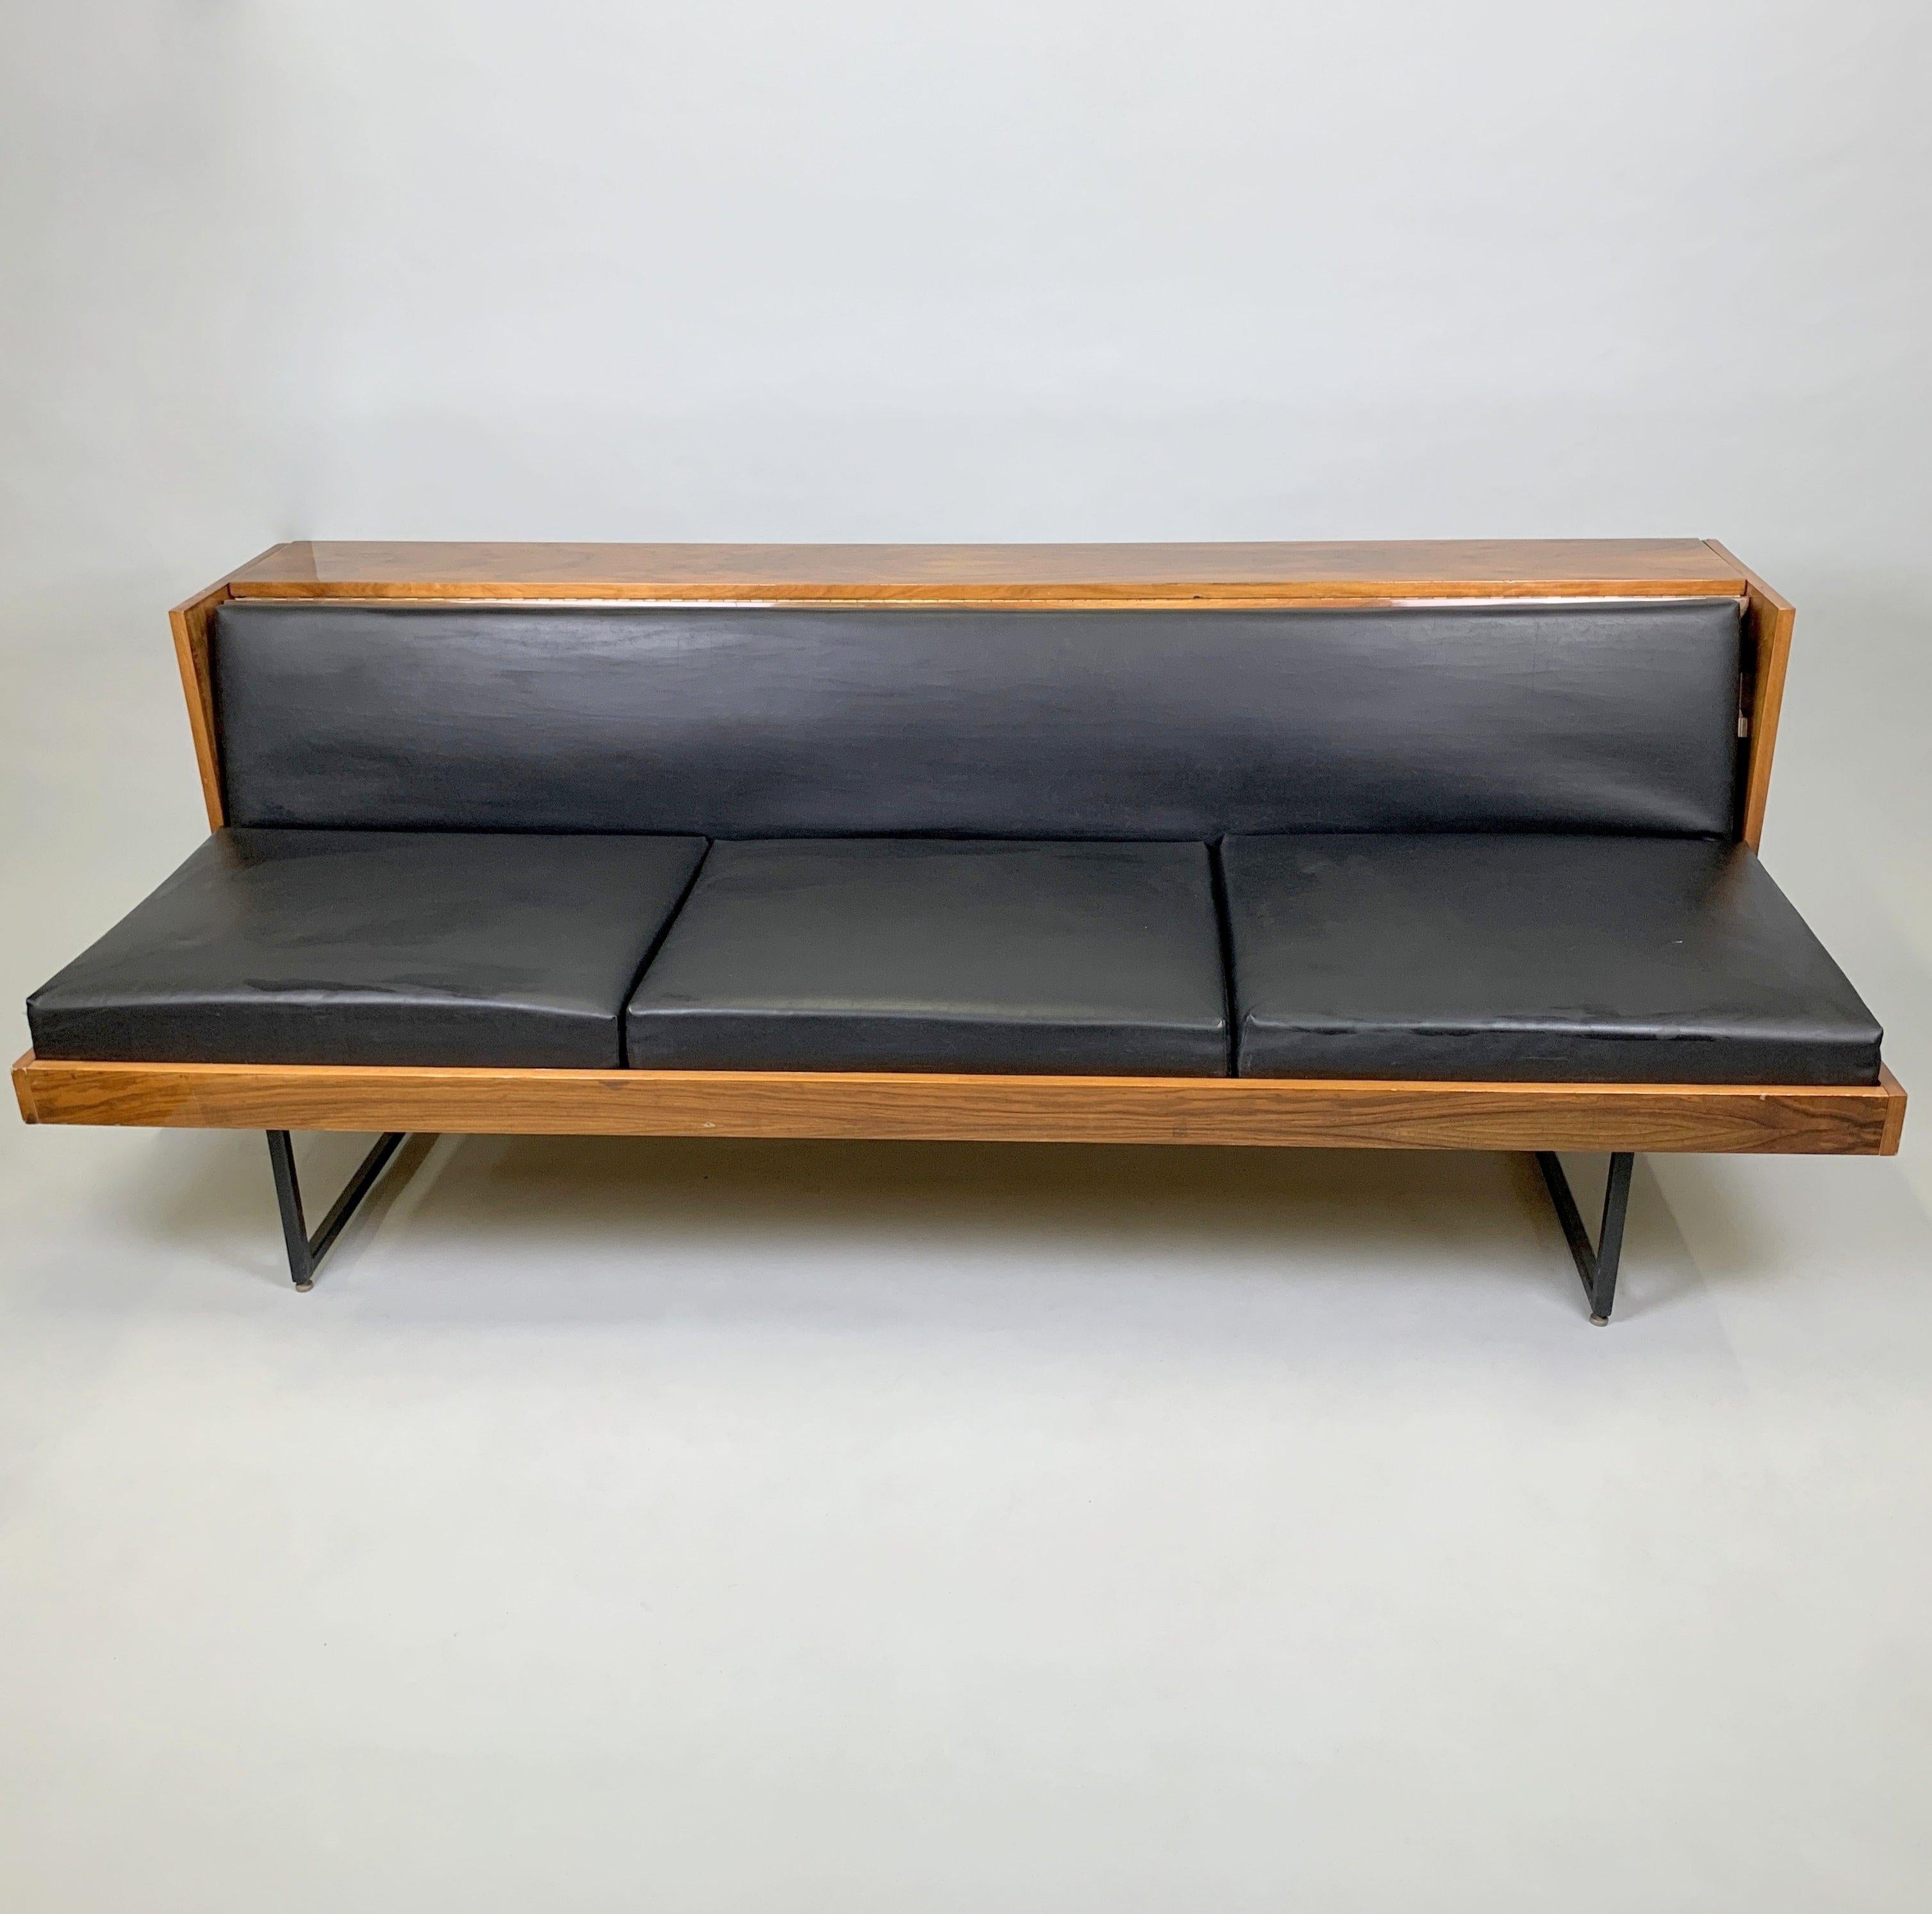 Verstellbares Vintage-Sofa aus Holz, Metall und Kunstleder. Er gehörte zu den hochwertigen Möbeln namens 'Belmondo', die in der Tschechoslowakei von Novy Domov in Spiska Nova Ves hergestellt wurden (markiert). In einem guten Jahrgang mit einigen